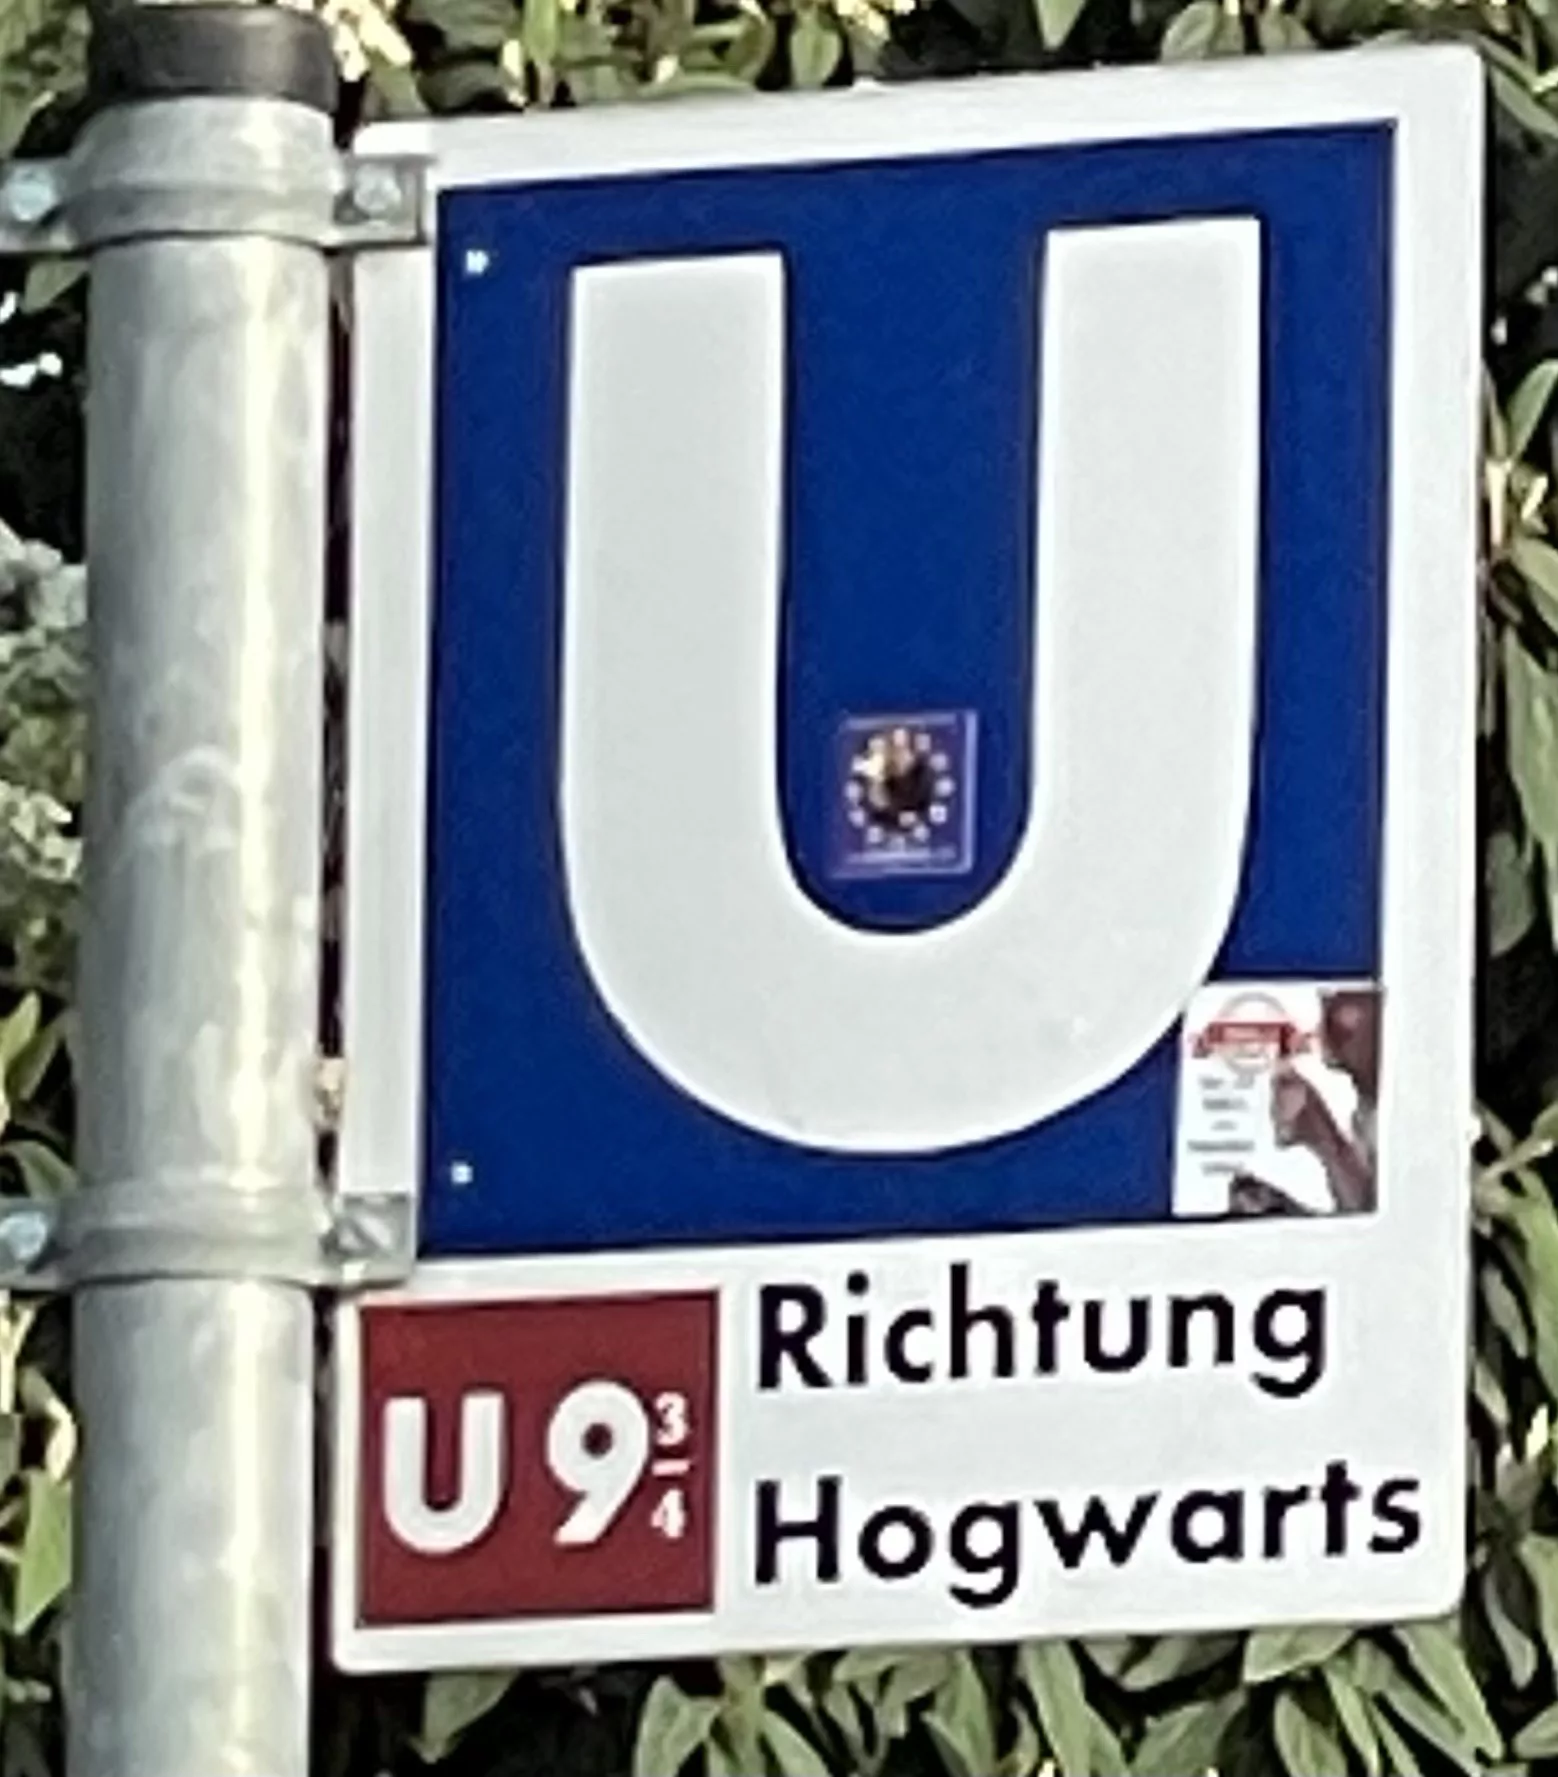 U-Bahnschild mit einem 'Richtung Hogwarts'-Defacing erweitert.